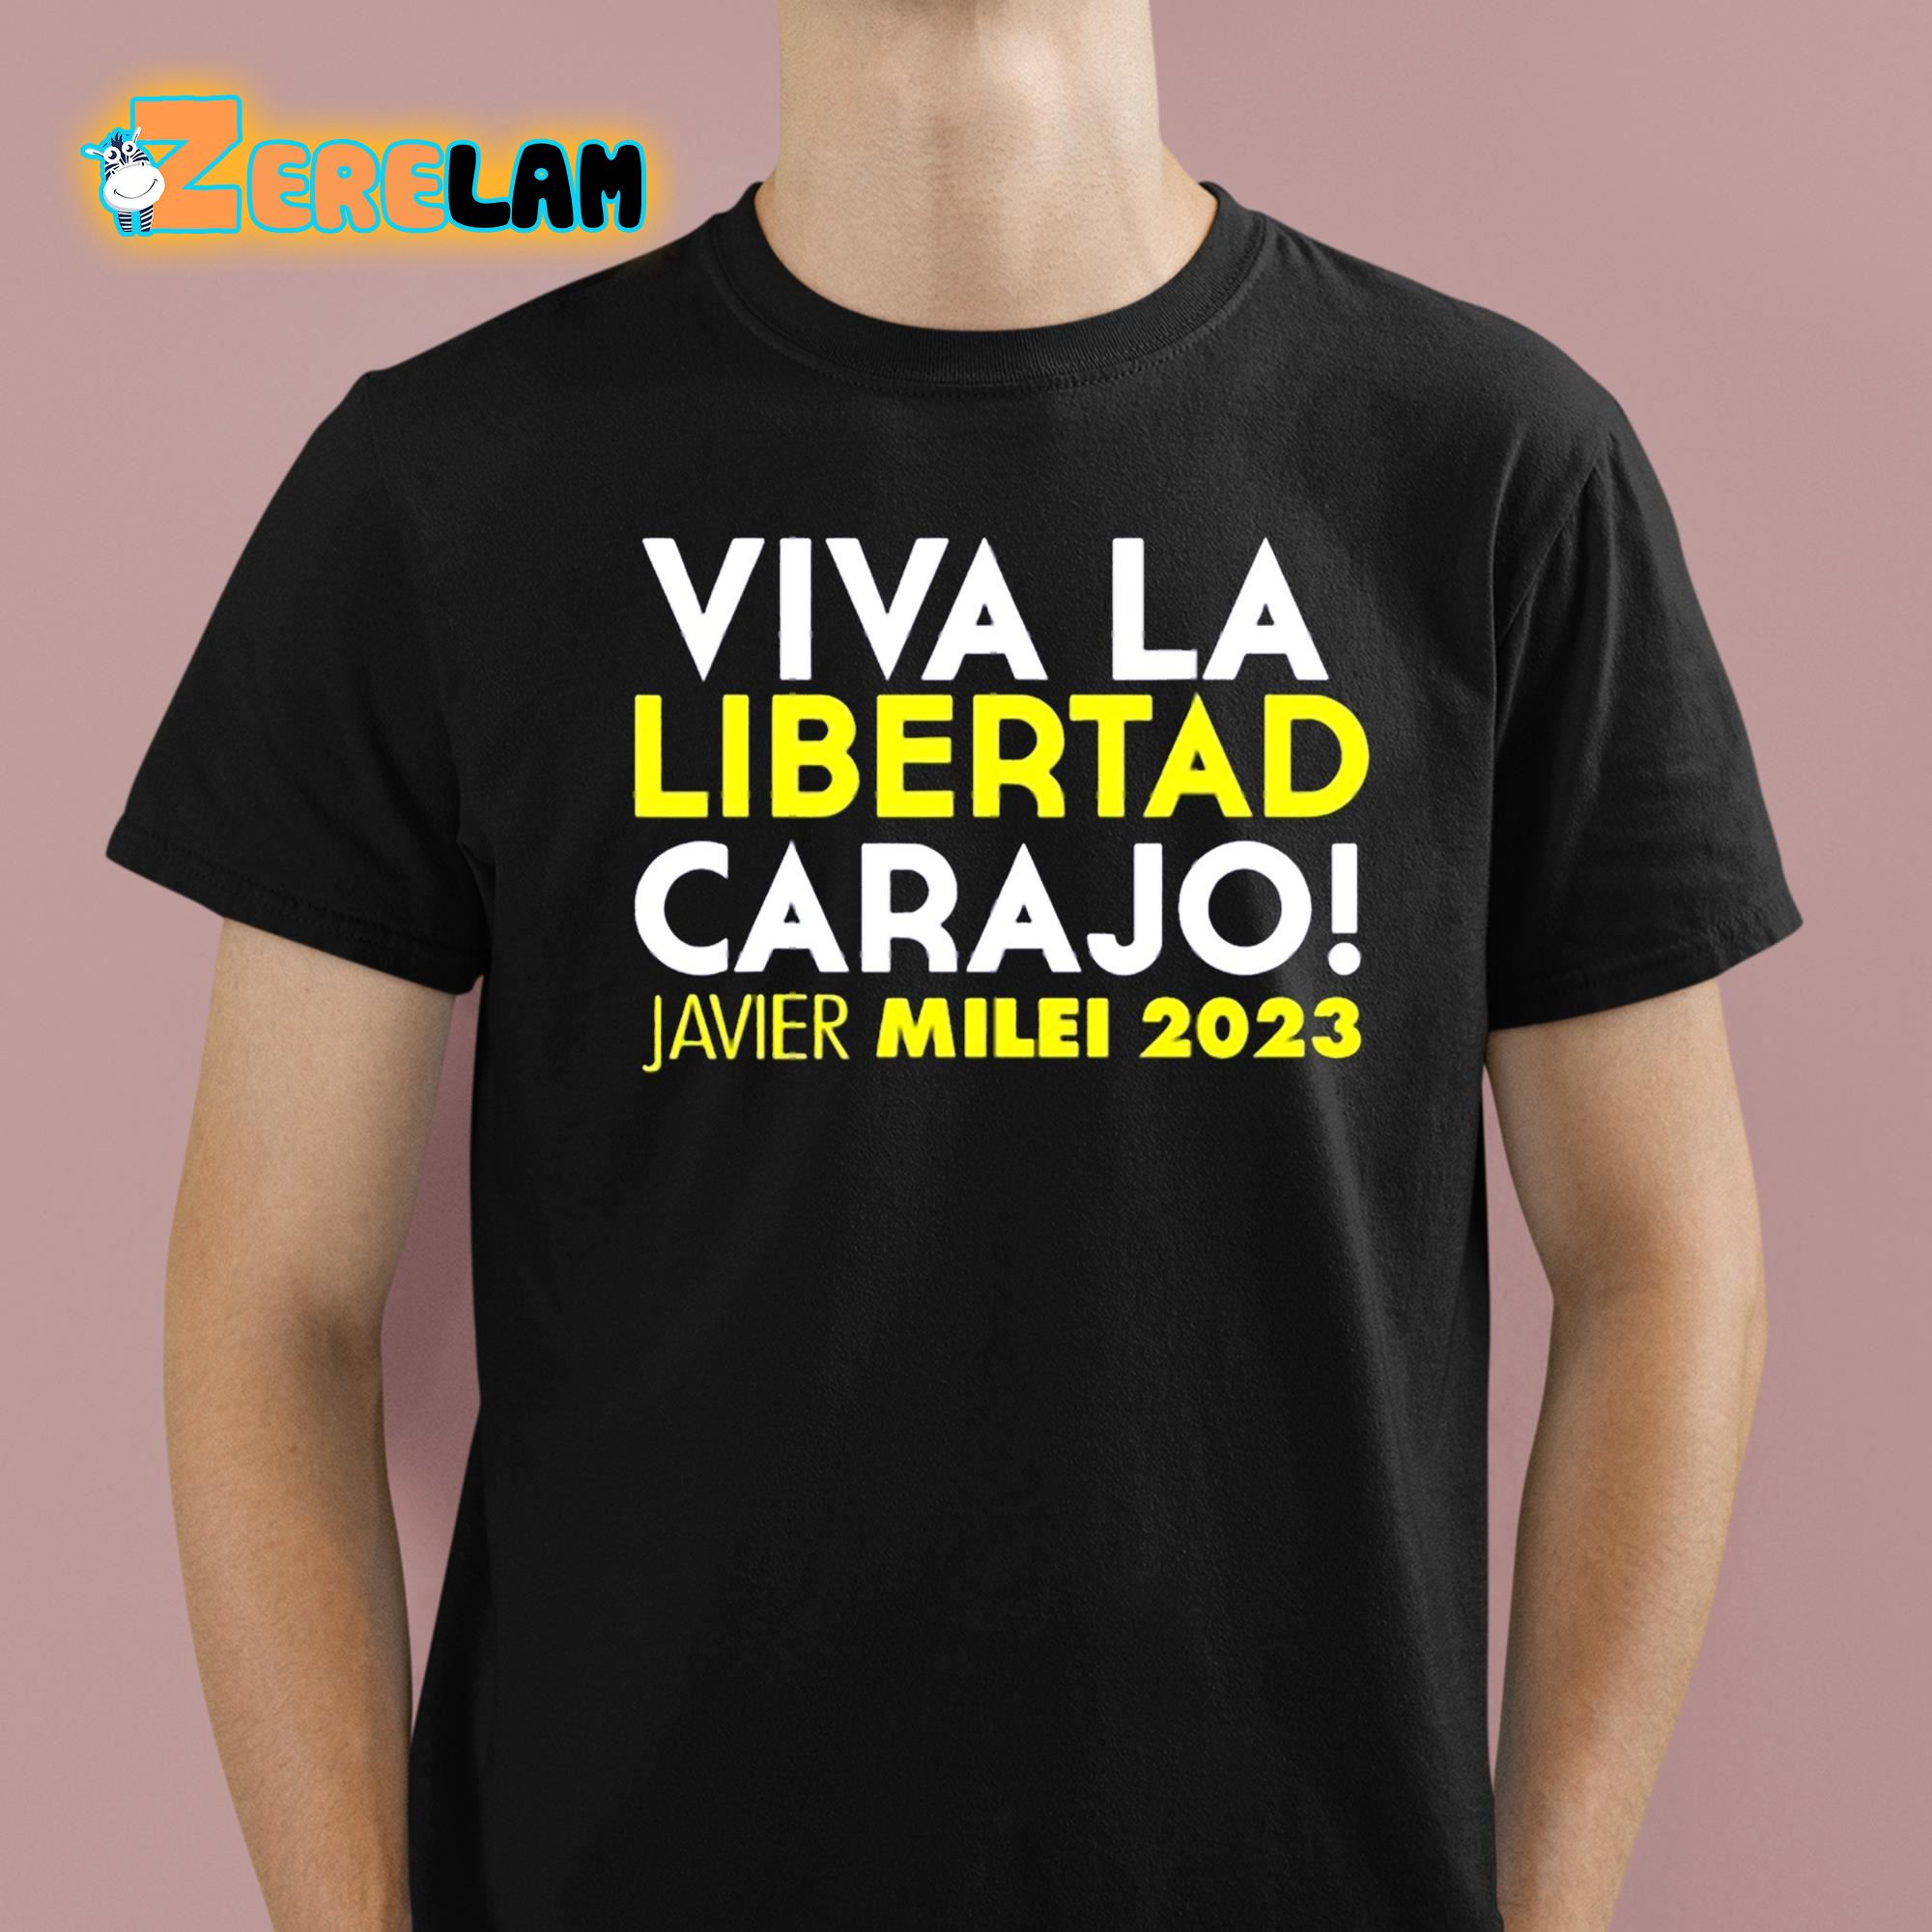 Vive La Resistance 01 Men's T-Shirt